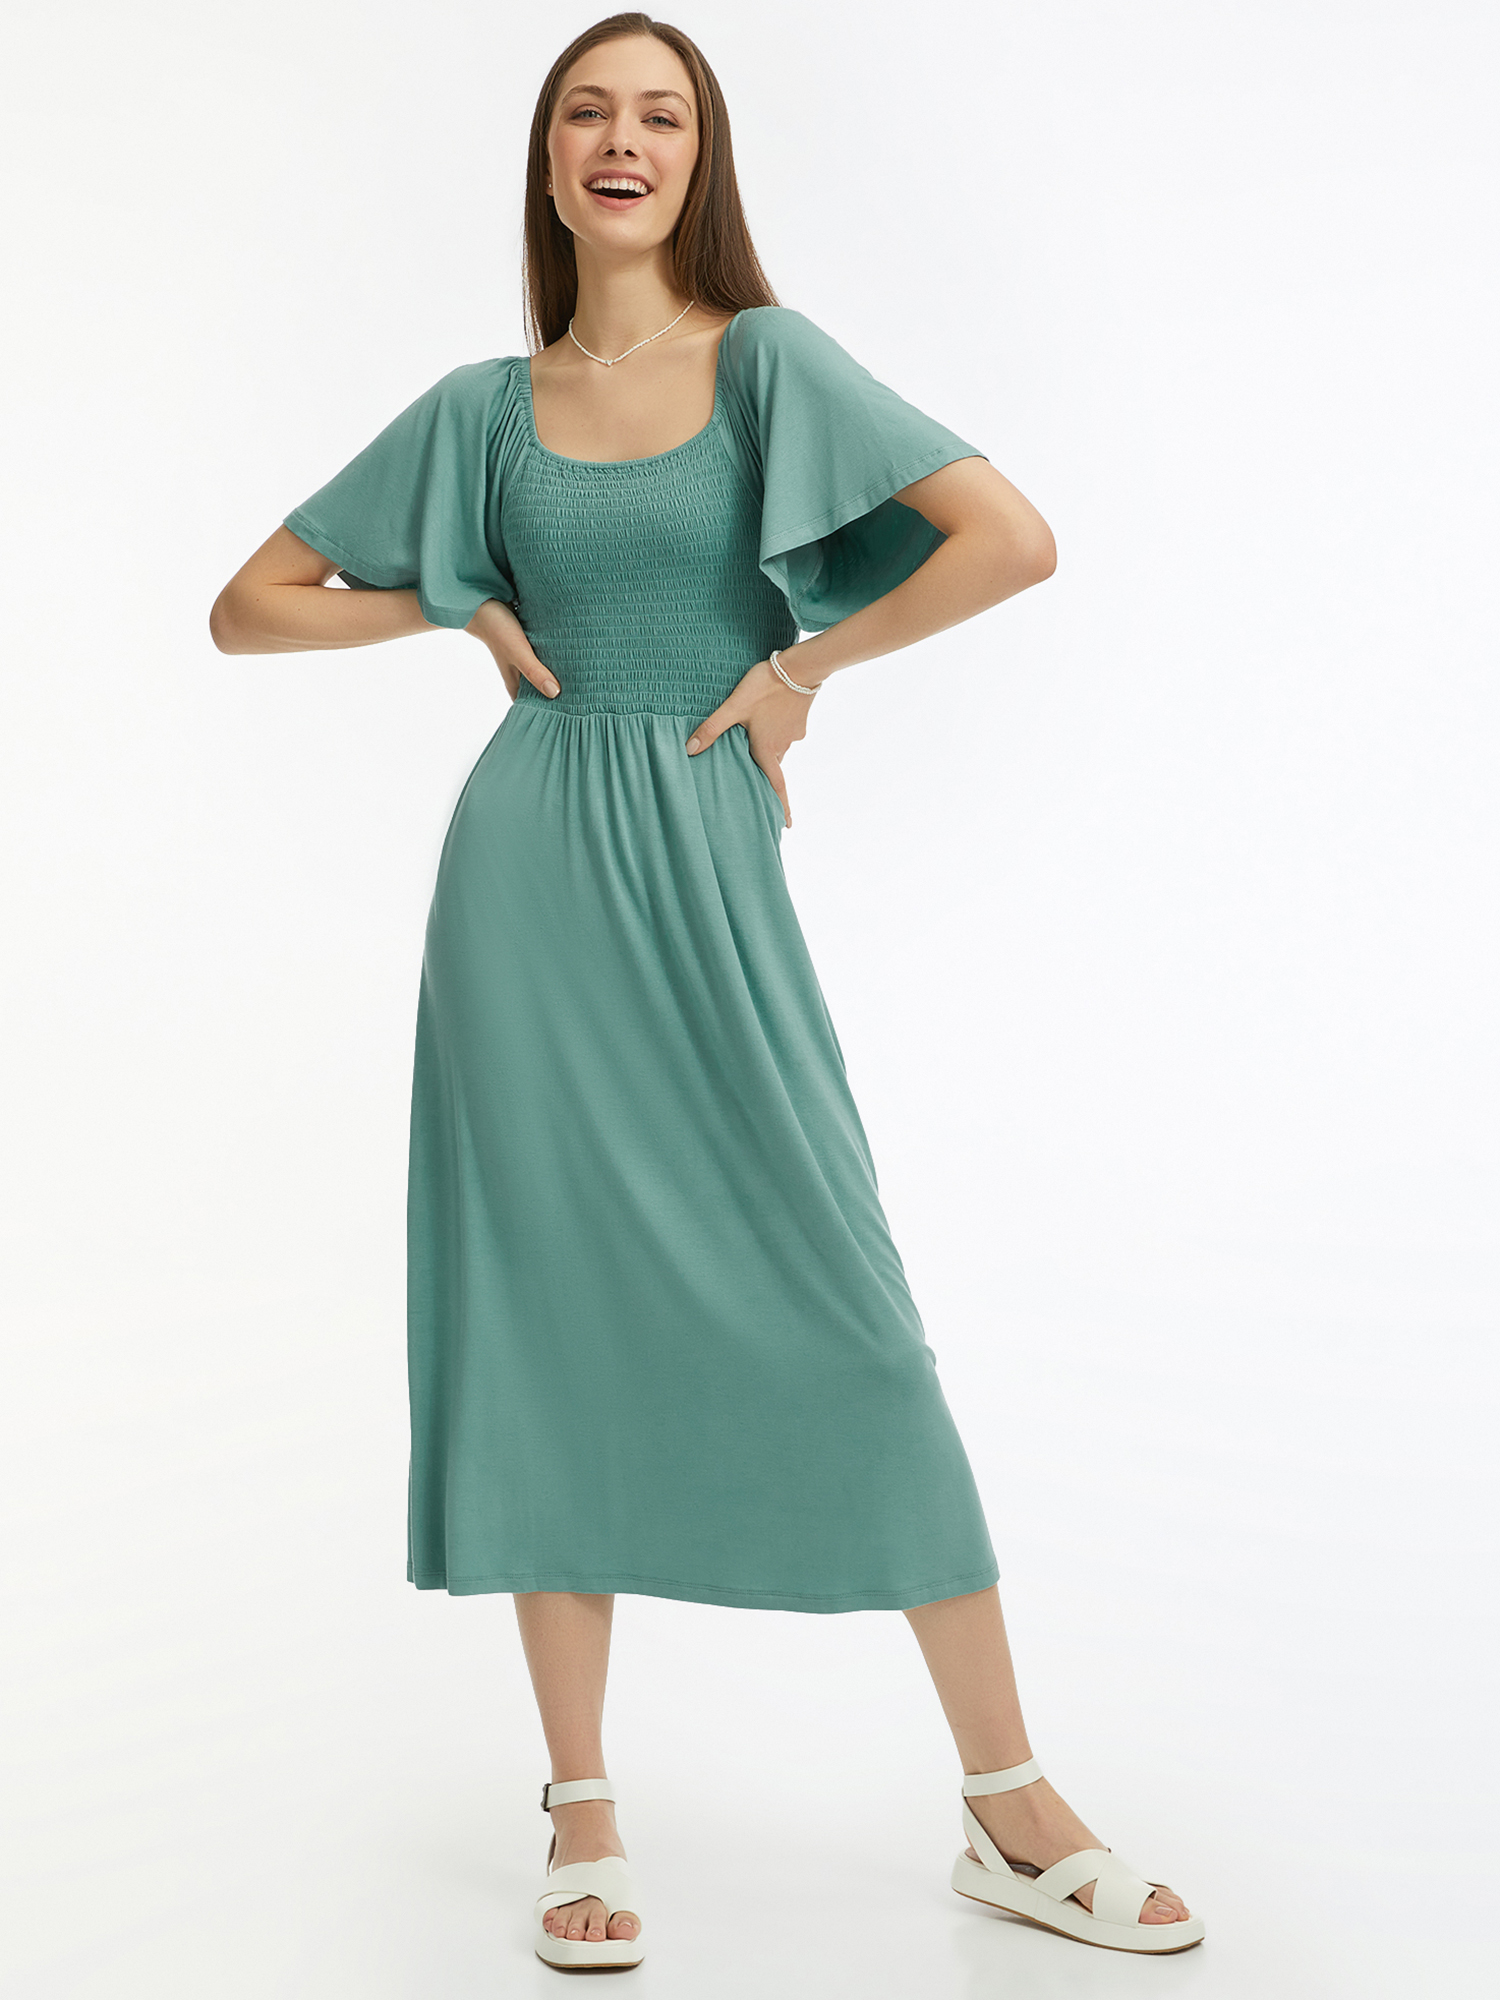 Платье женское oodji 14000184 зеленое M